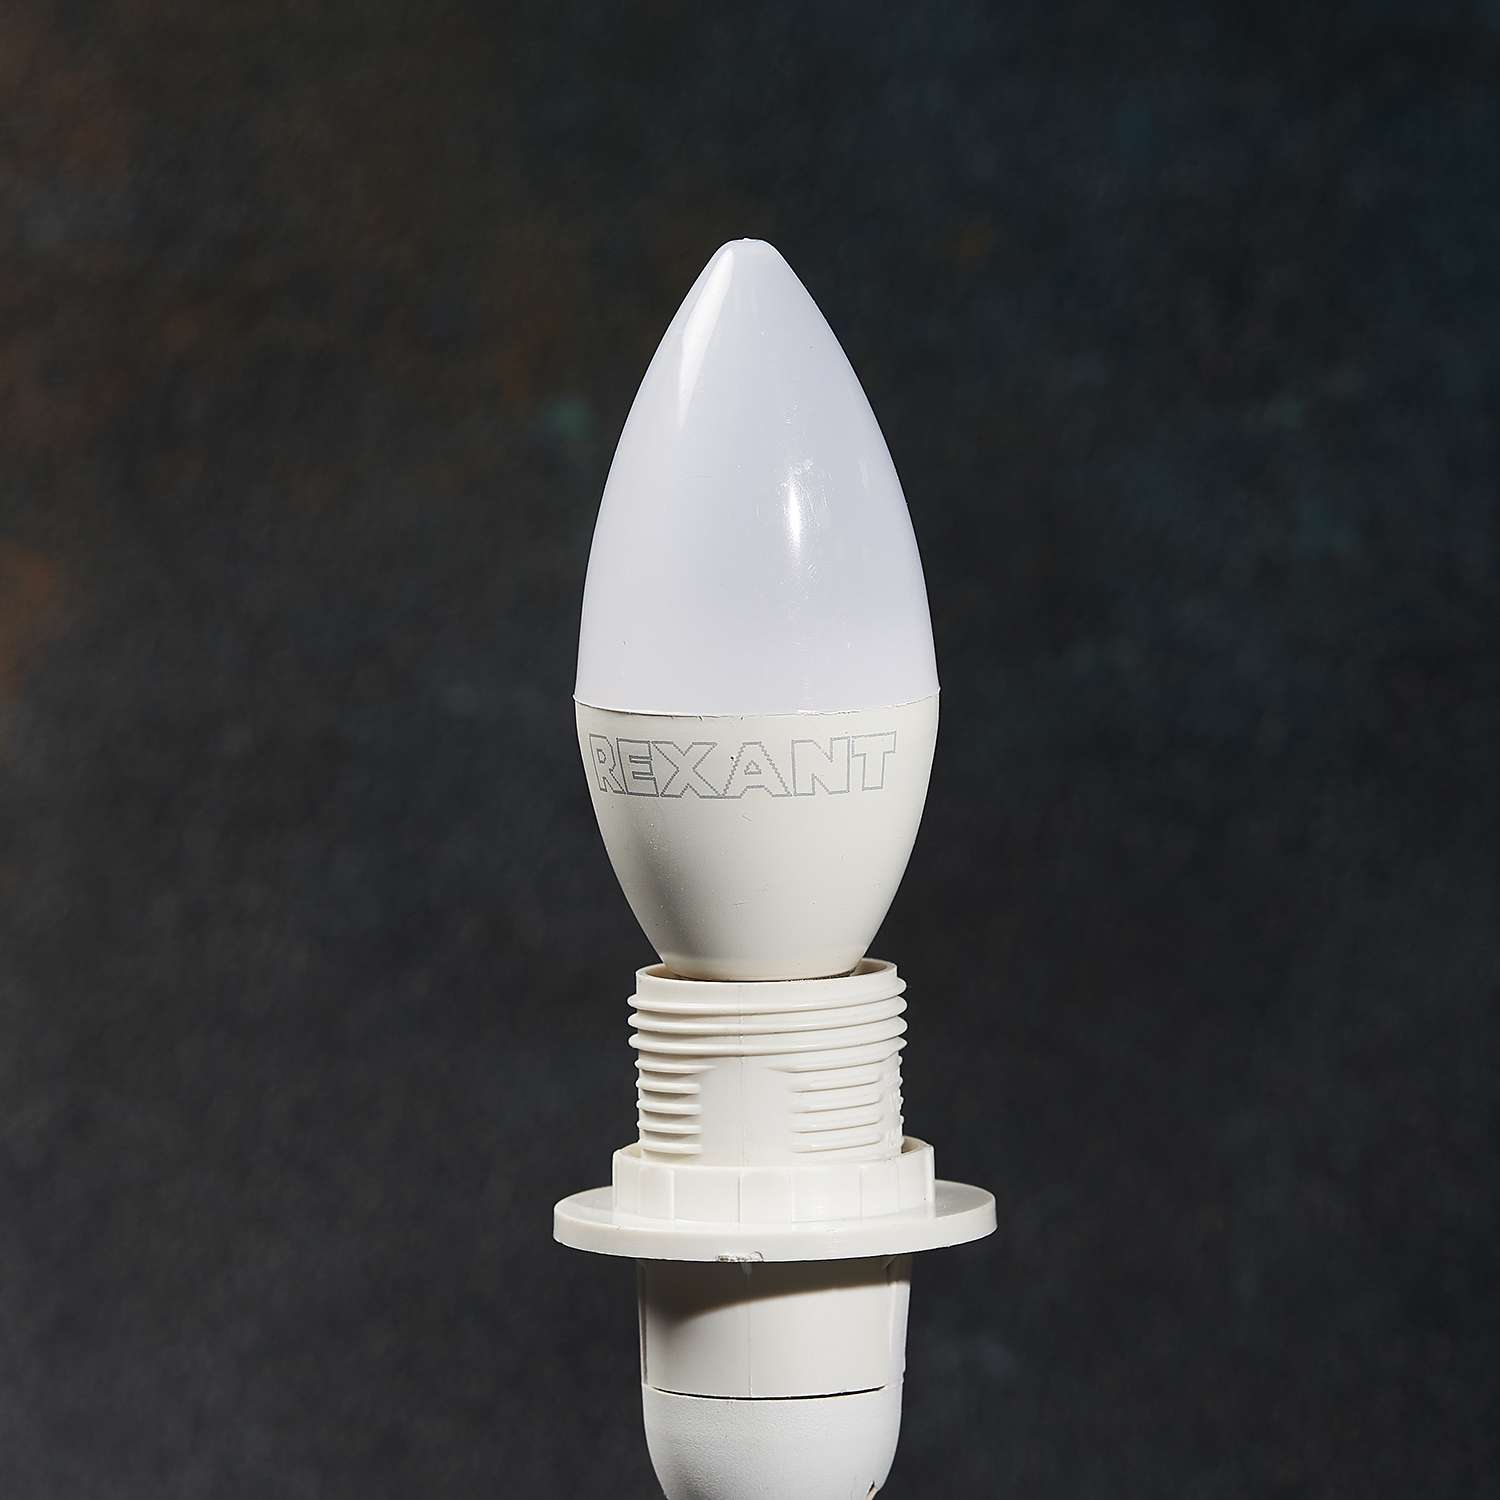 Лампа светодиодная REXANT E14 «Свеча» 7.5Вт 713Лм 2700K матовая колба 3 штуки в упаковке - фото 4